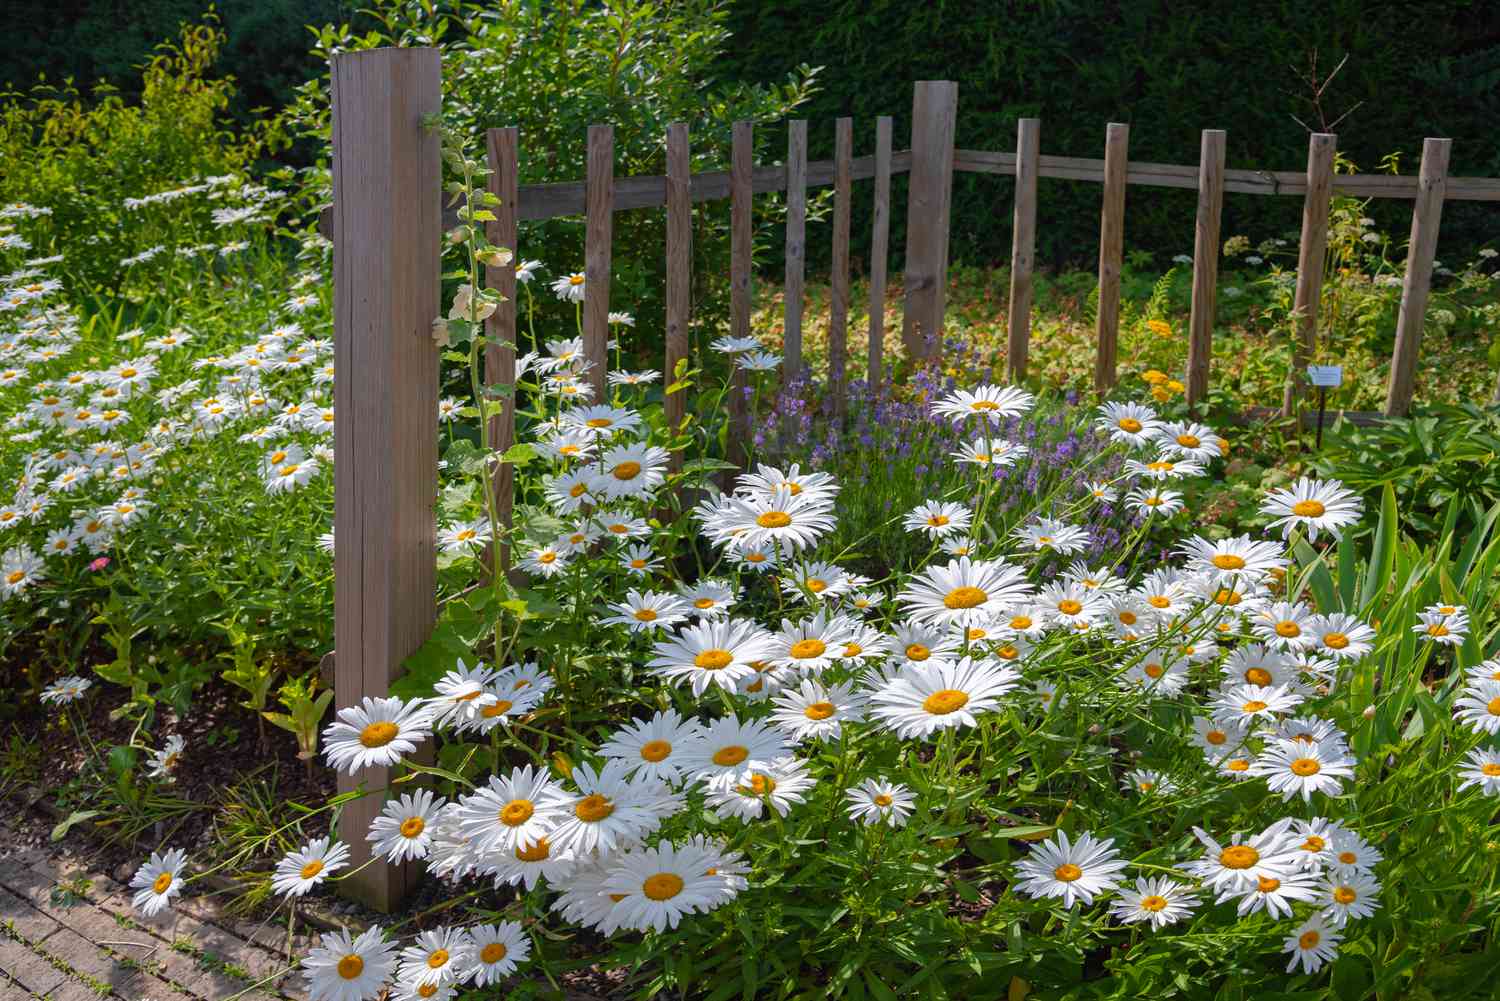 Flores de margarita ojo de buey con pétalos blancos radiantes a un lado de la valla de madera